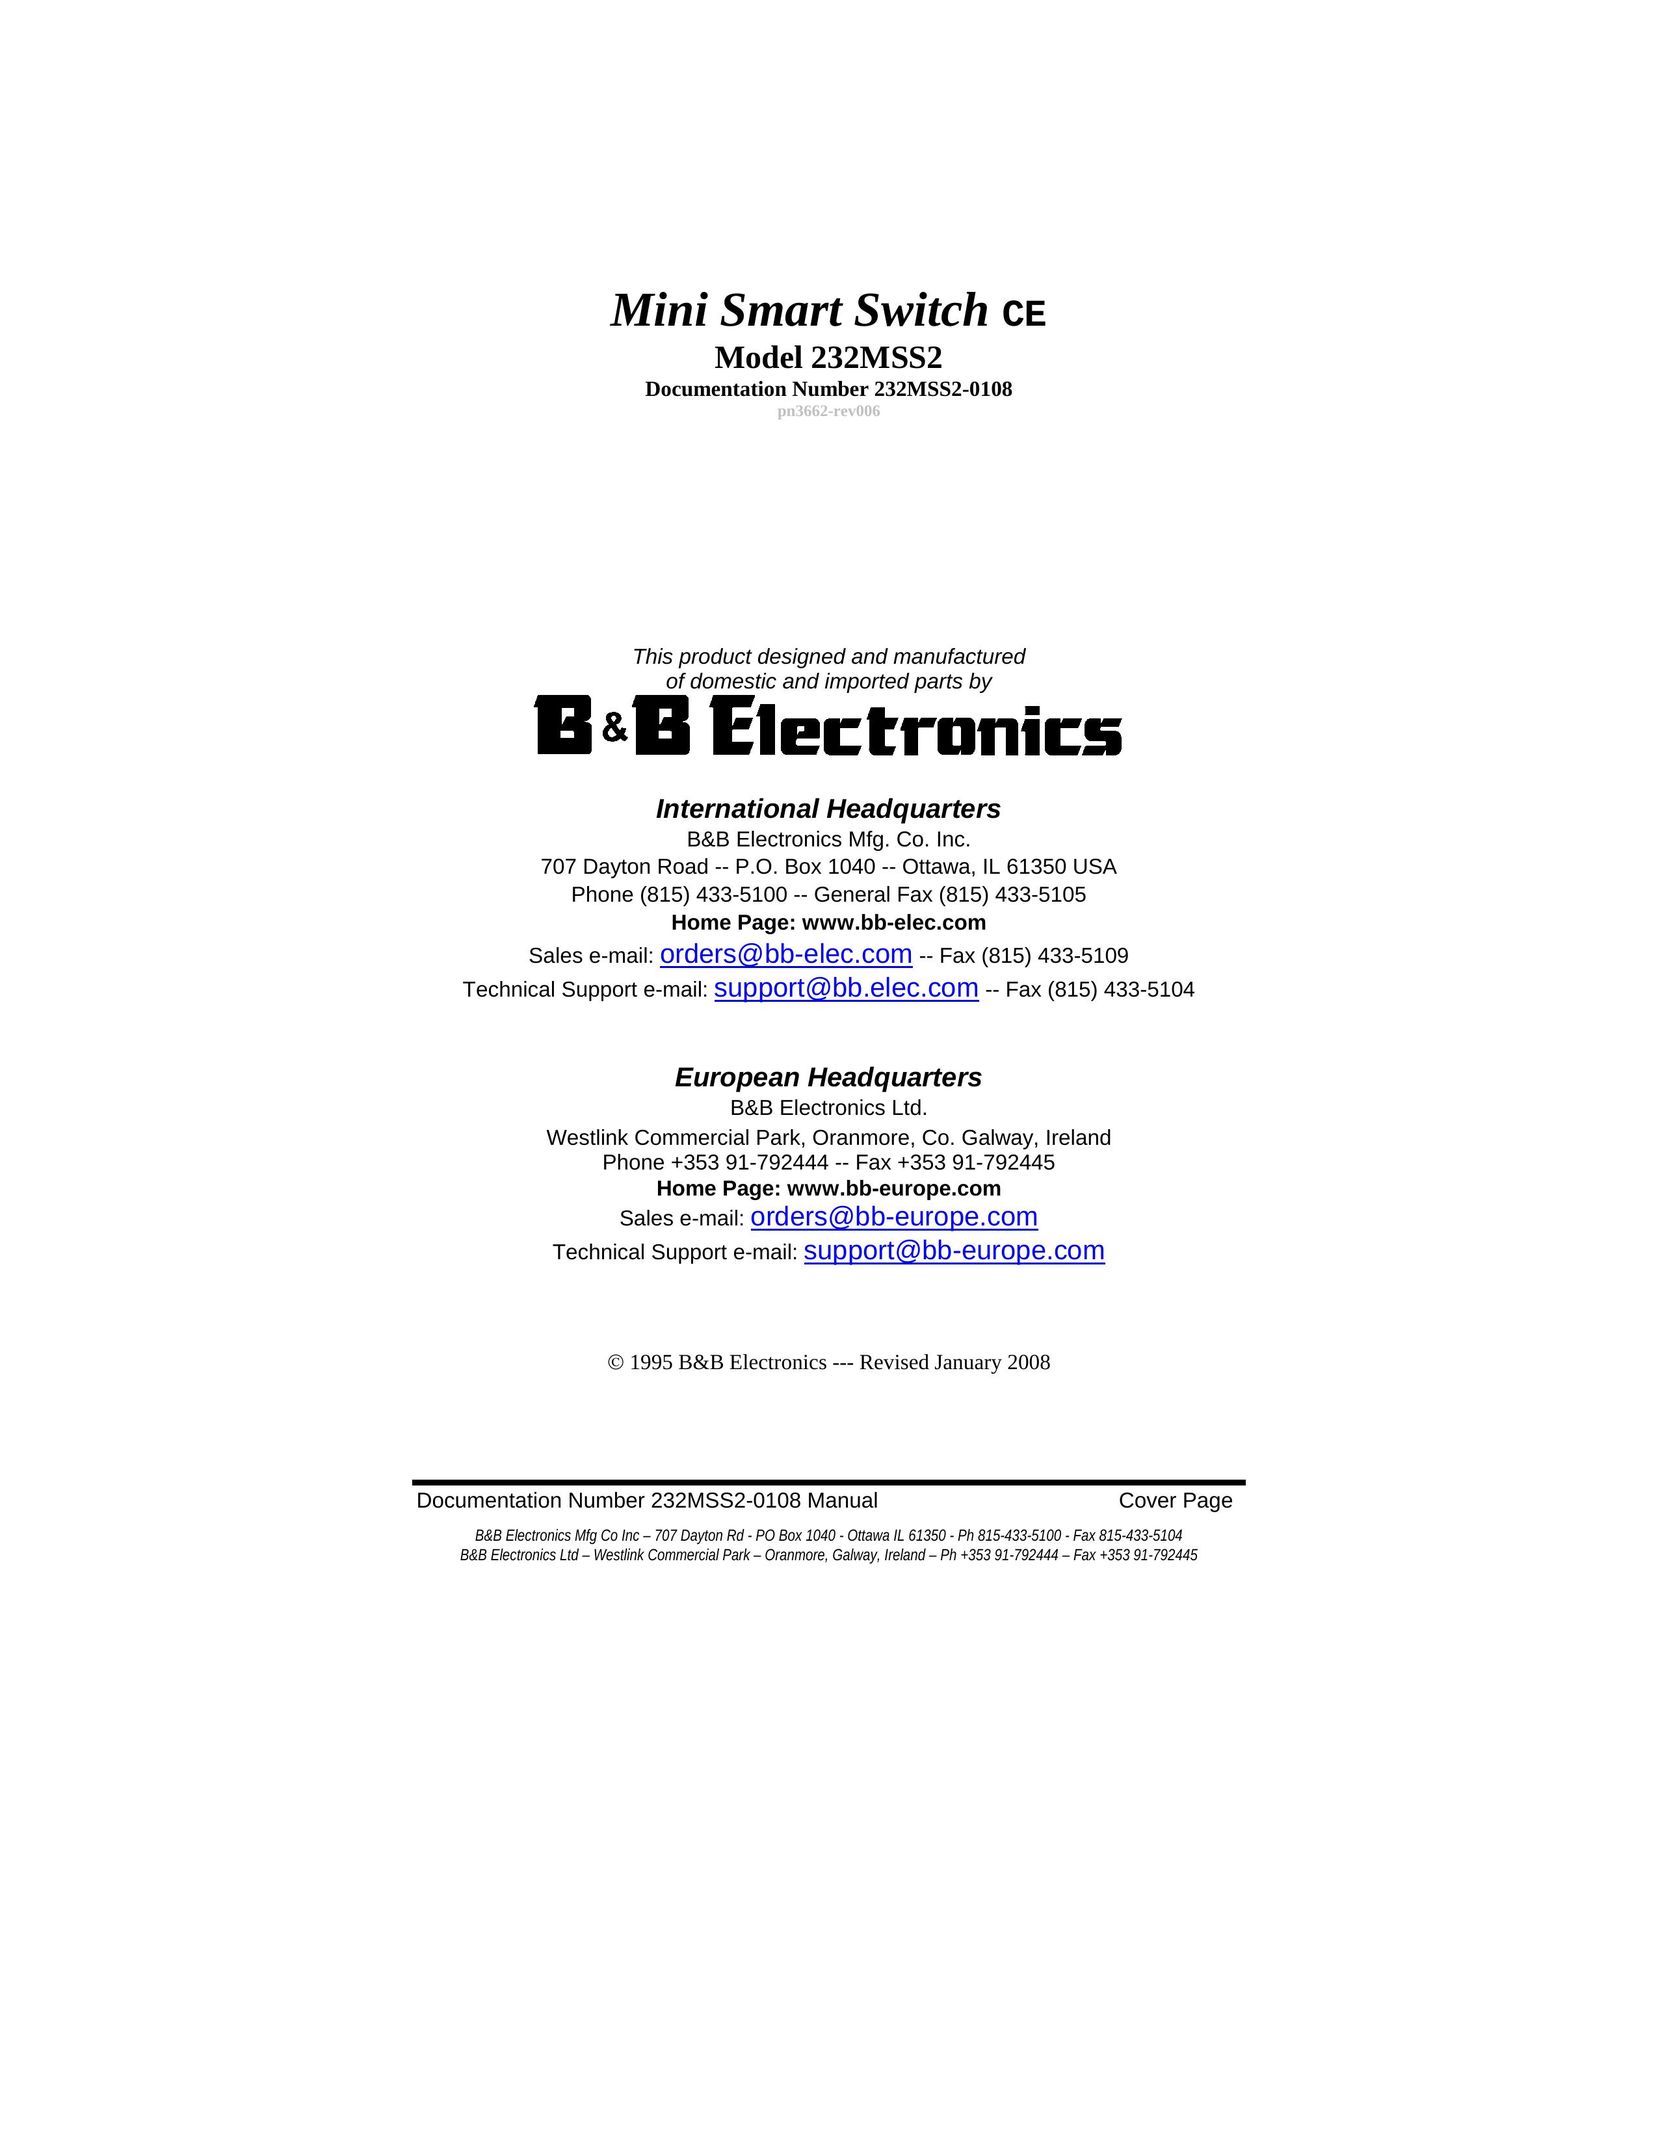 B&B Electronics 232MSS2 Switch User Manual